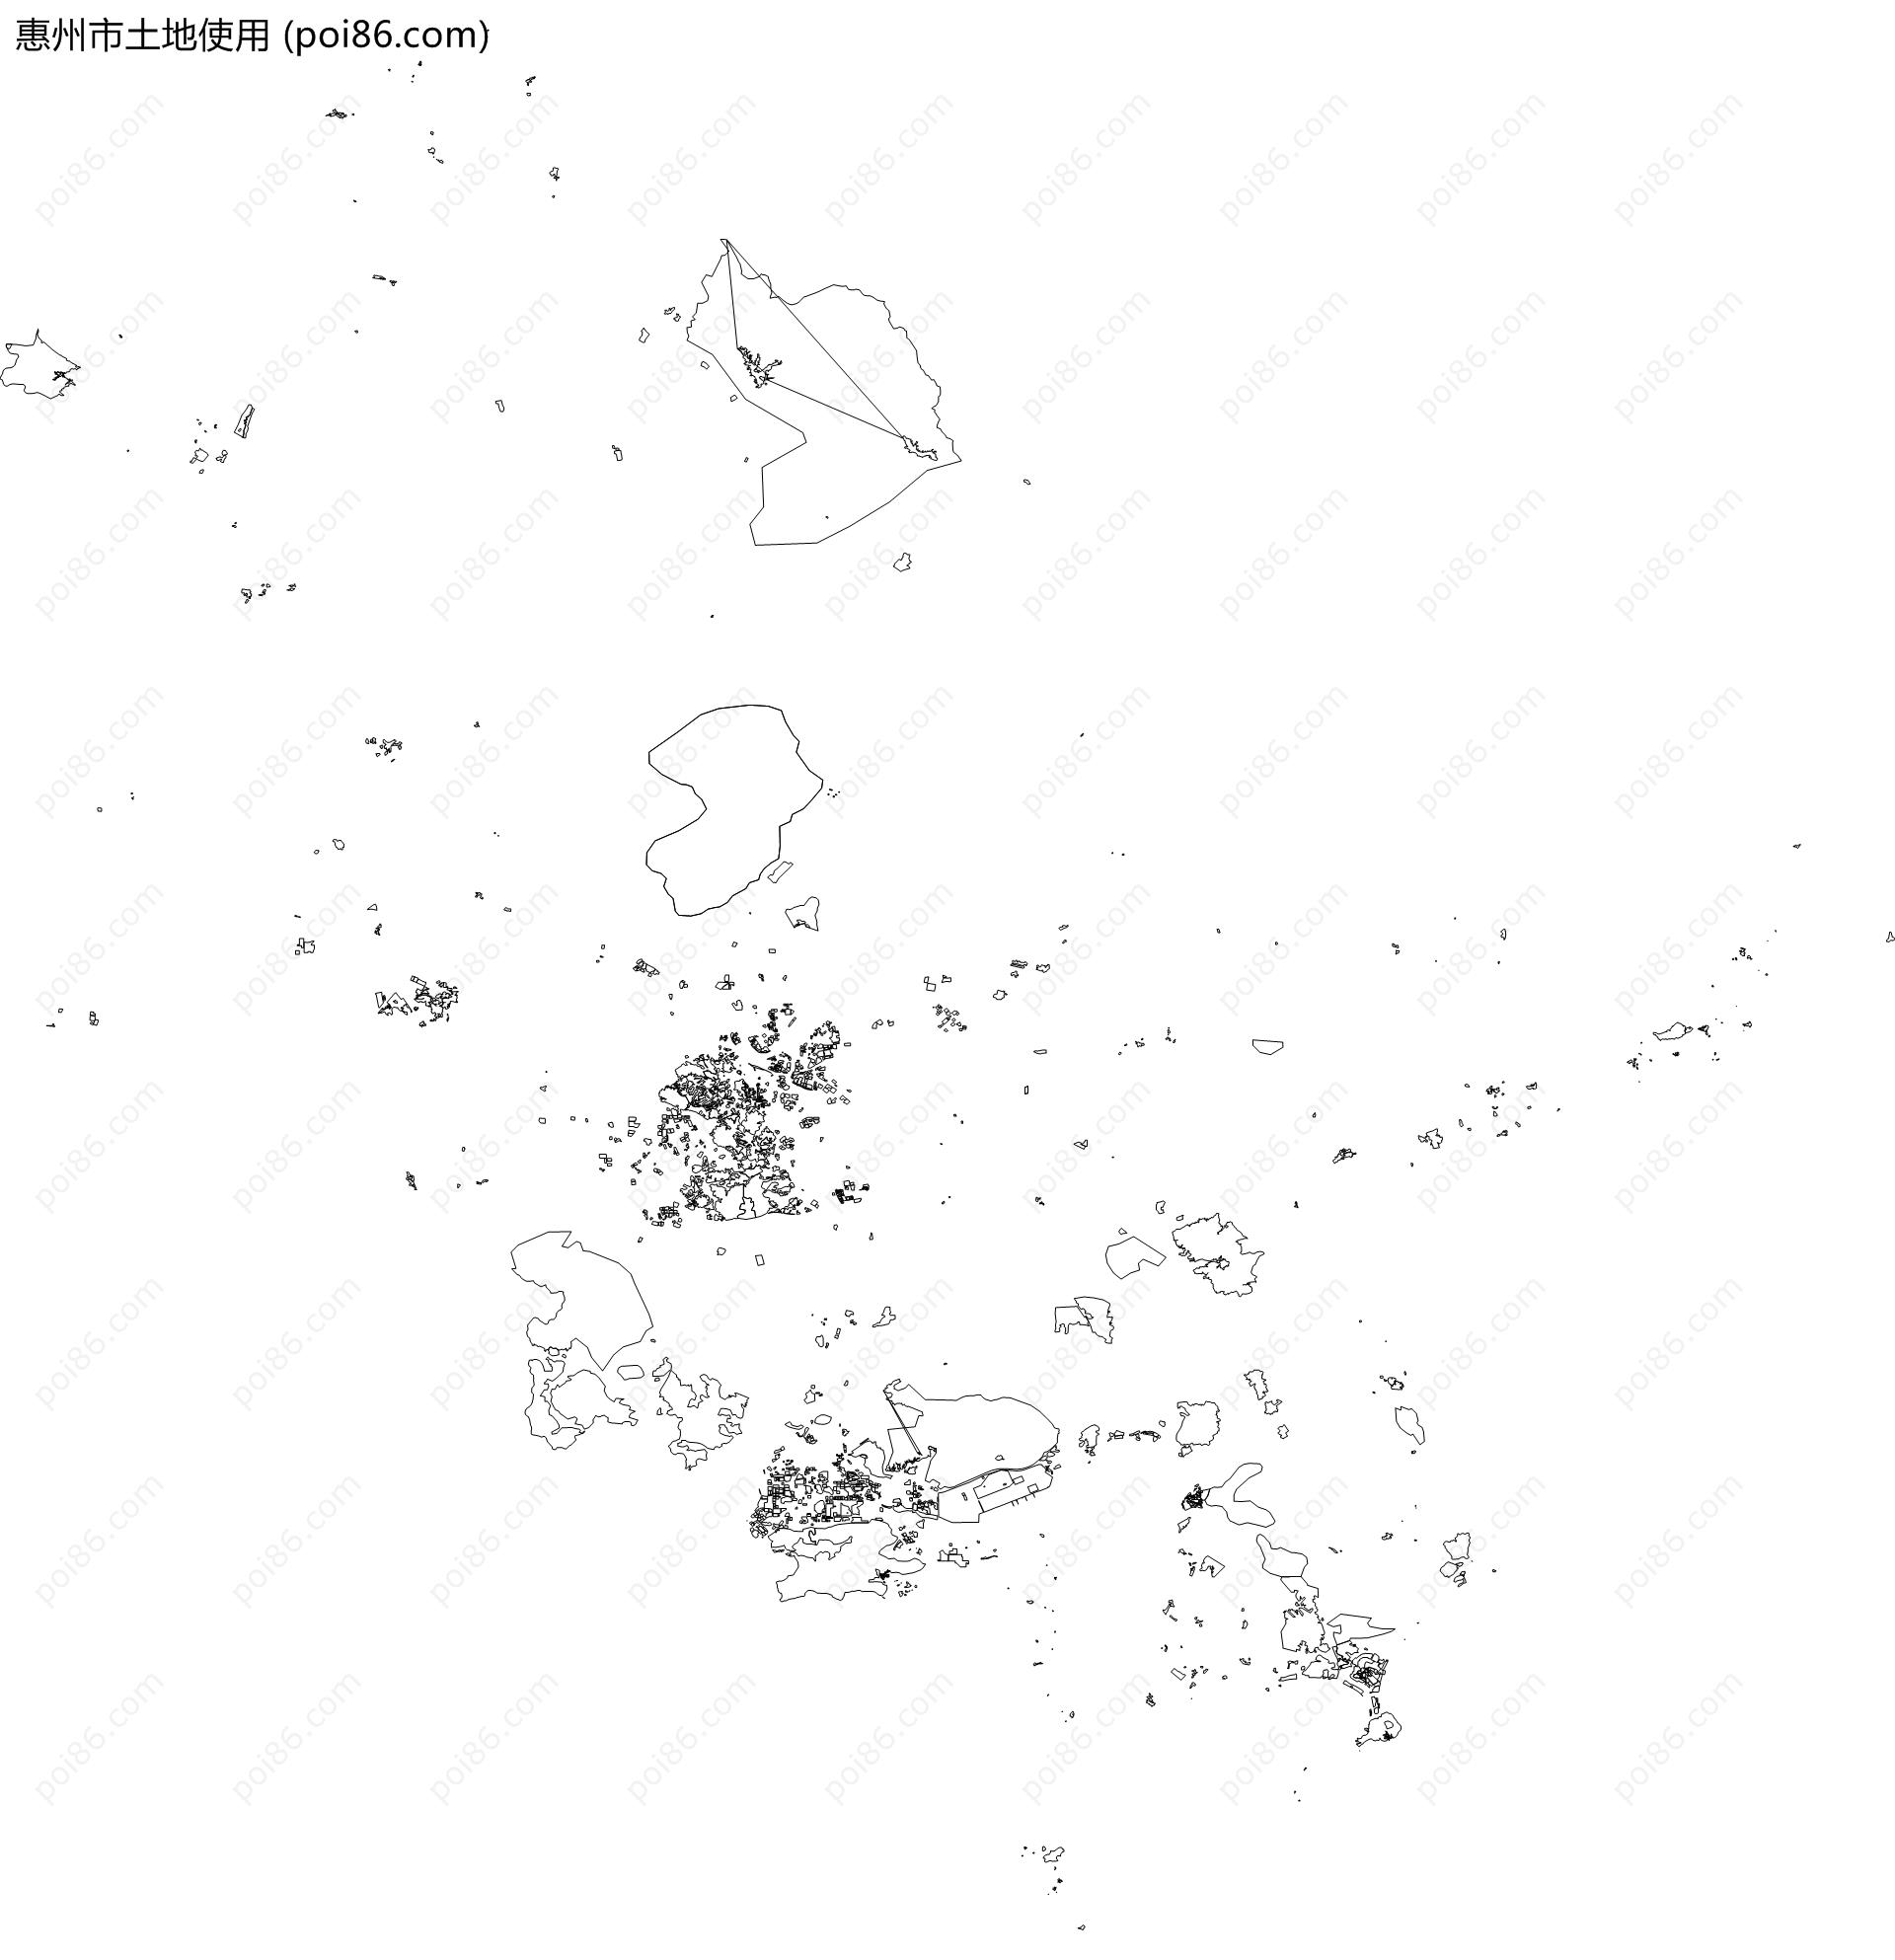 惠州市土地使用地图